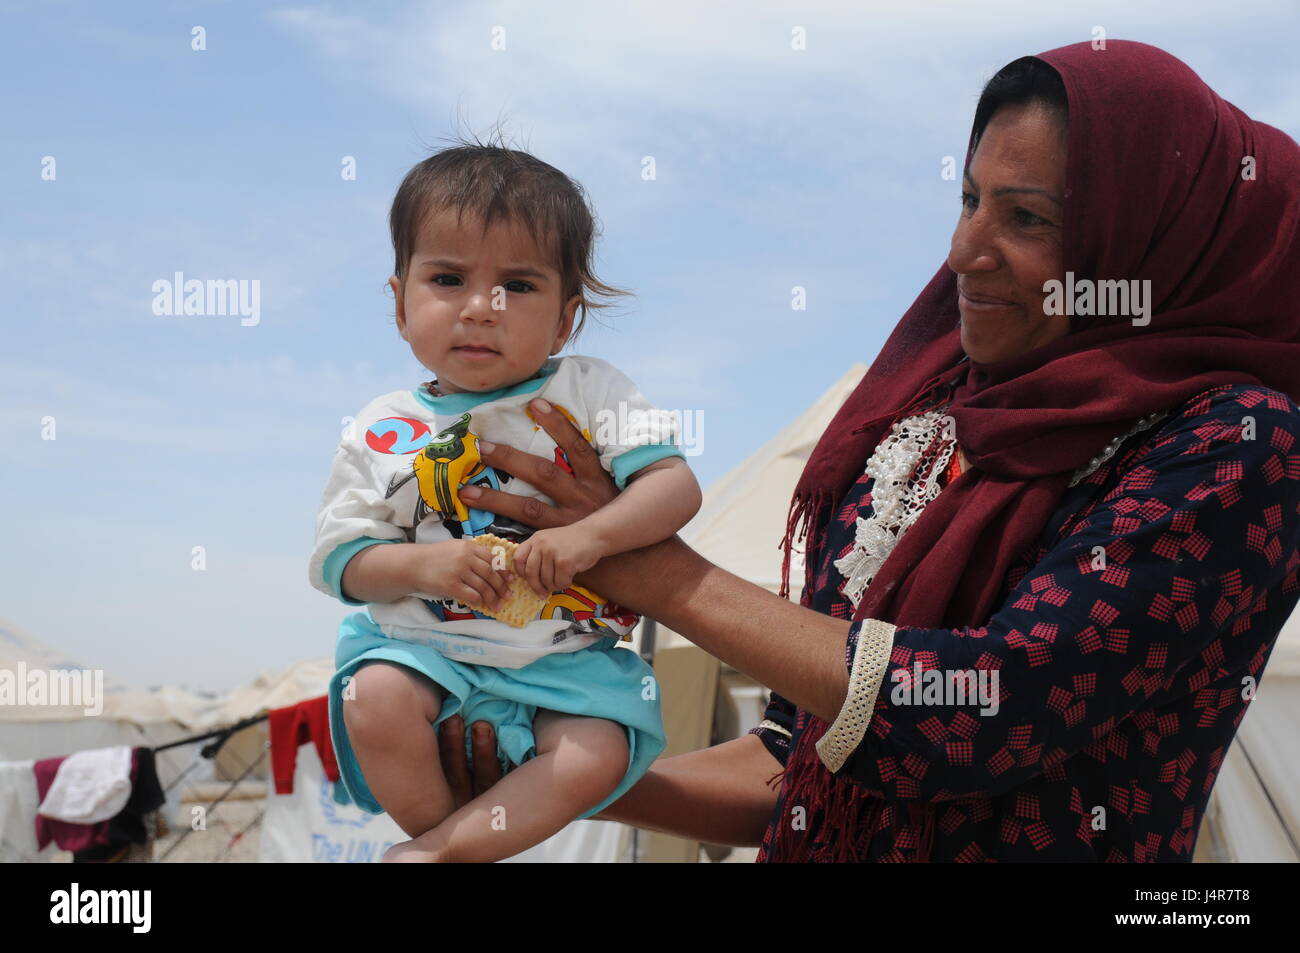 Mosul, Iraq. 13 Maggio, 2017. Una donna che tiene il suo bambino in Hassansham U2 Camp, circa 30 km a est di Mosul, Iraq, il 13 maggio 2017. Il campo ha una capacità di ospitare più di 9 mila persone quando è completamente occupata. Secondo le autorità irachene, più di 630.000 persone sono state sfollate da Mosul e nelle zone circostanti a partire dall'ottobre 2016, quando l'operazione militare ha iniziato a. Questo include più di 434,000 spostato da Mosul occidentale a partire dalla metà di febbraio di quest'anno. Credito: Wei Yudong/Xinhua/Alamy Live News Foto Stock